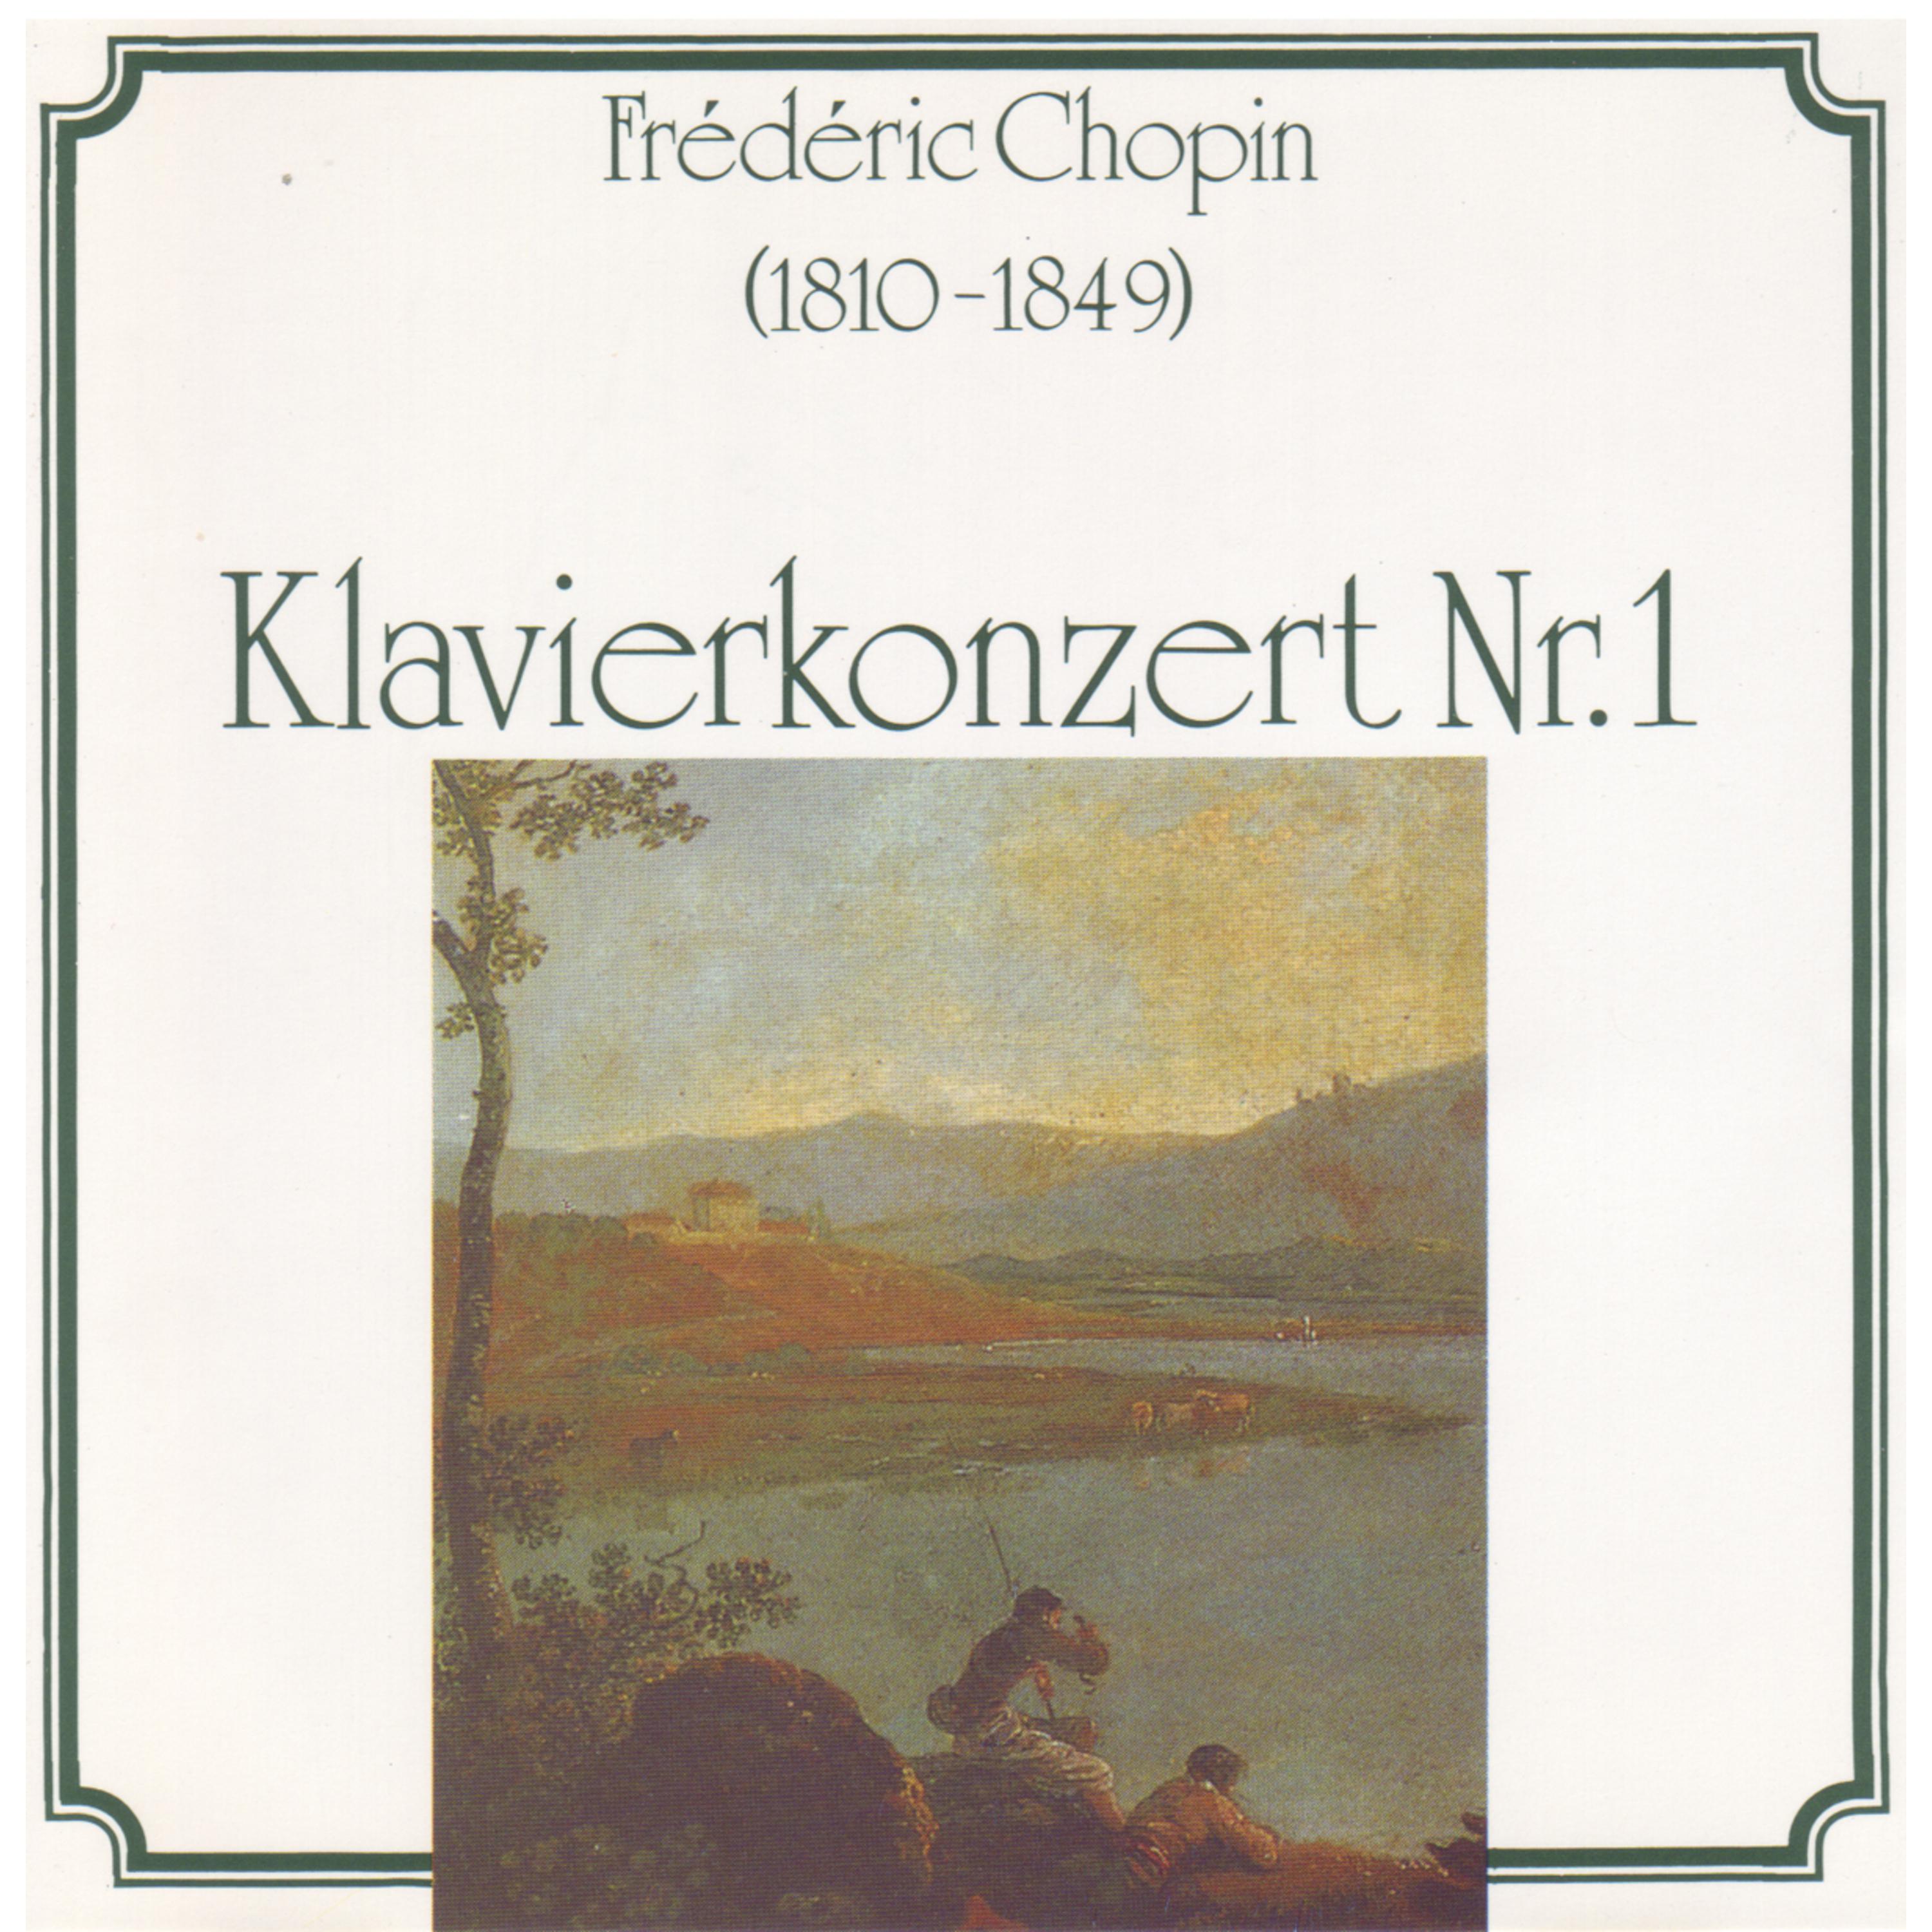 Fre de ric Chopin: Klavierkonzert Nr. 1, Walzer